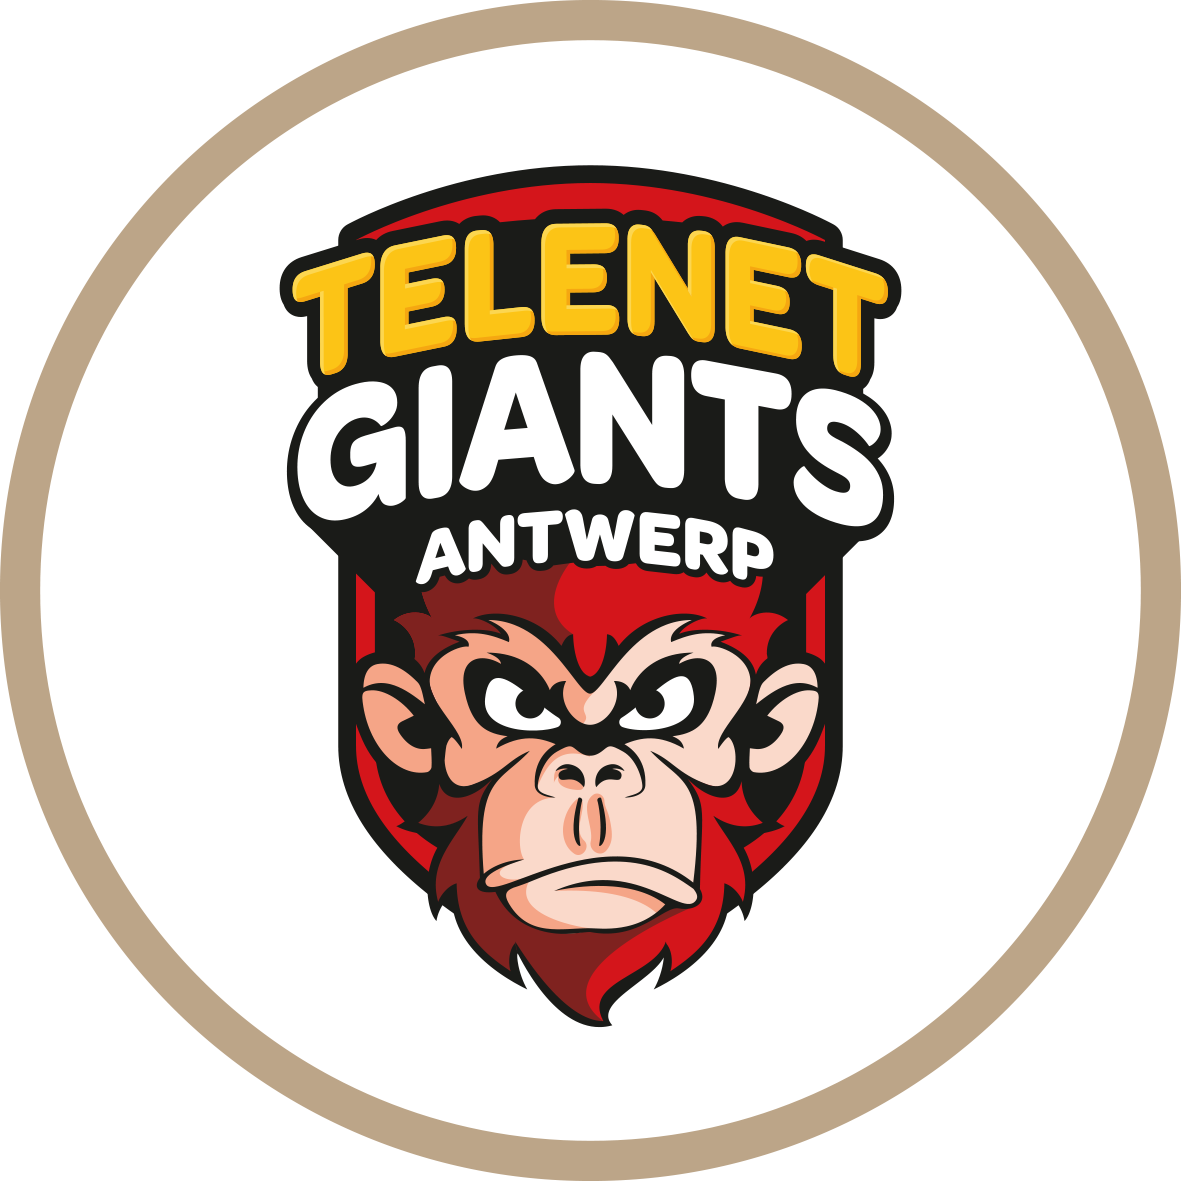 Port of Antwerp Giants ANTWERP